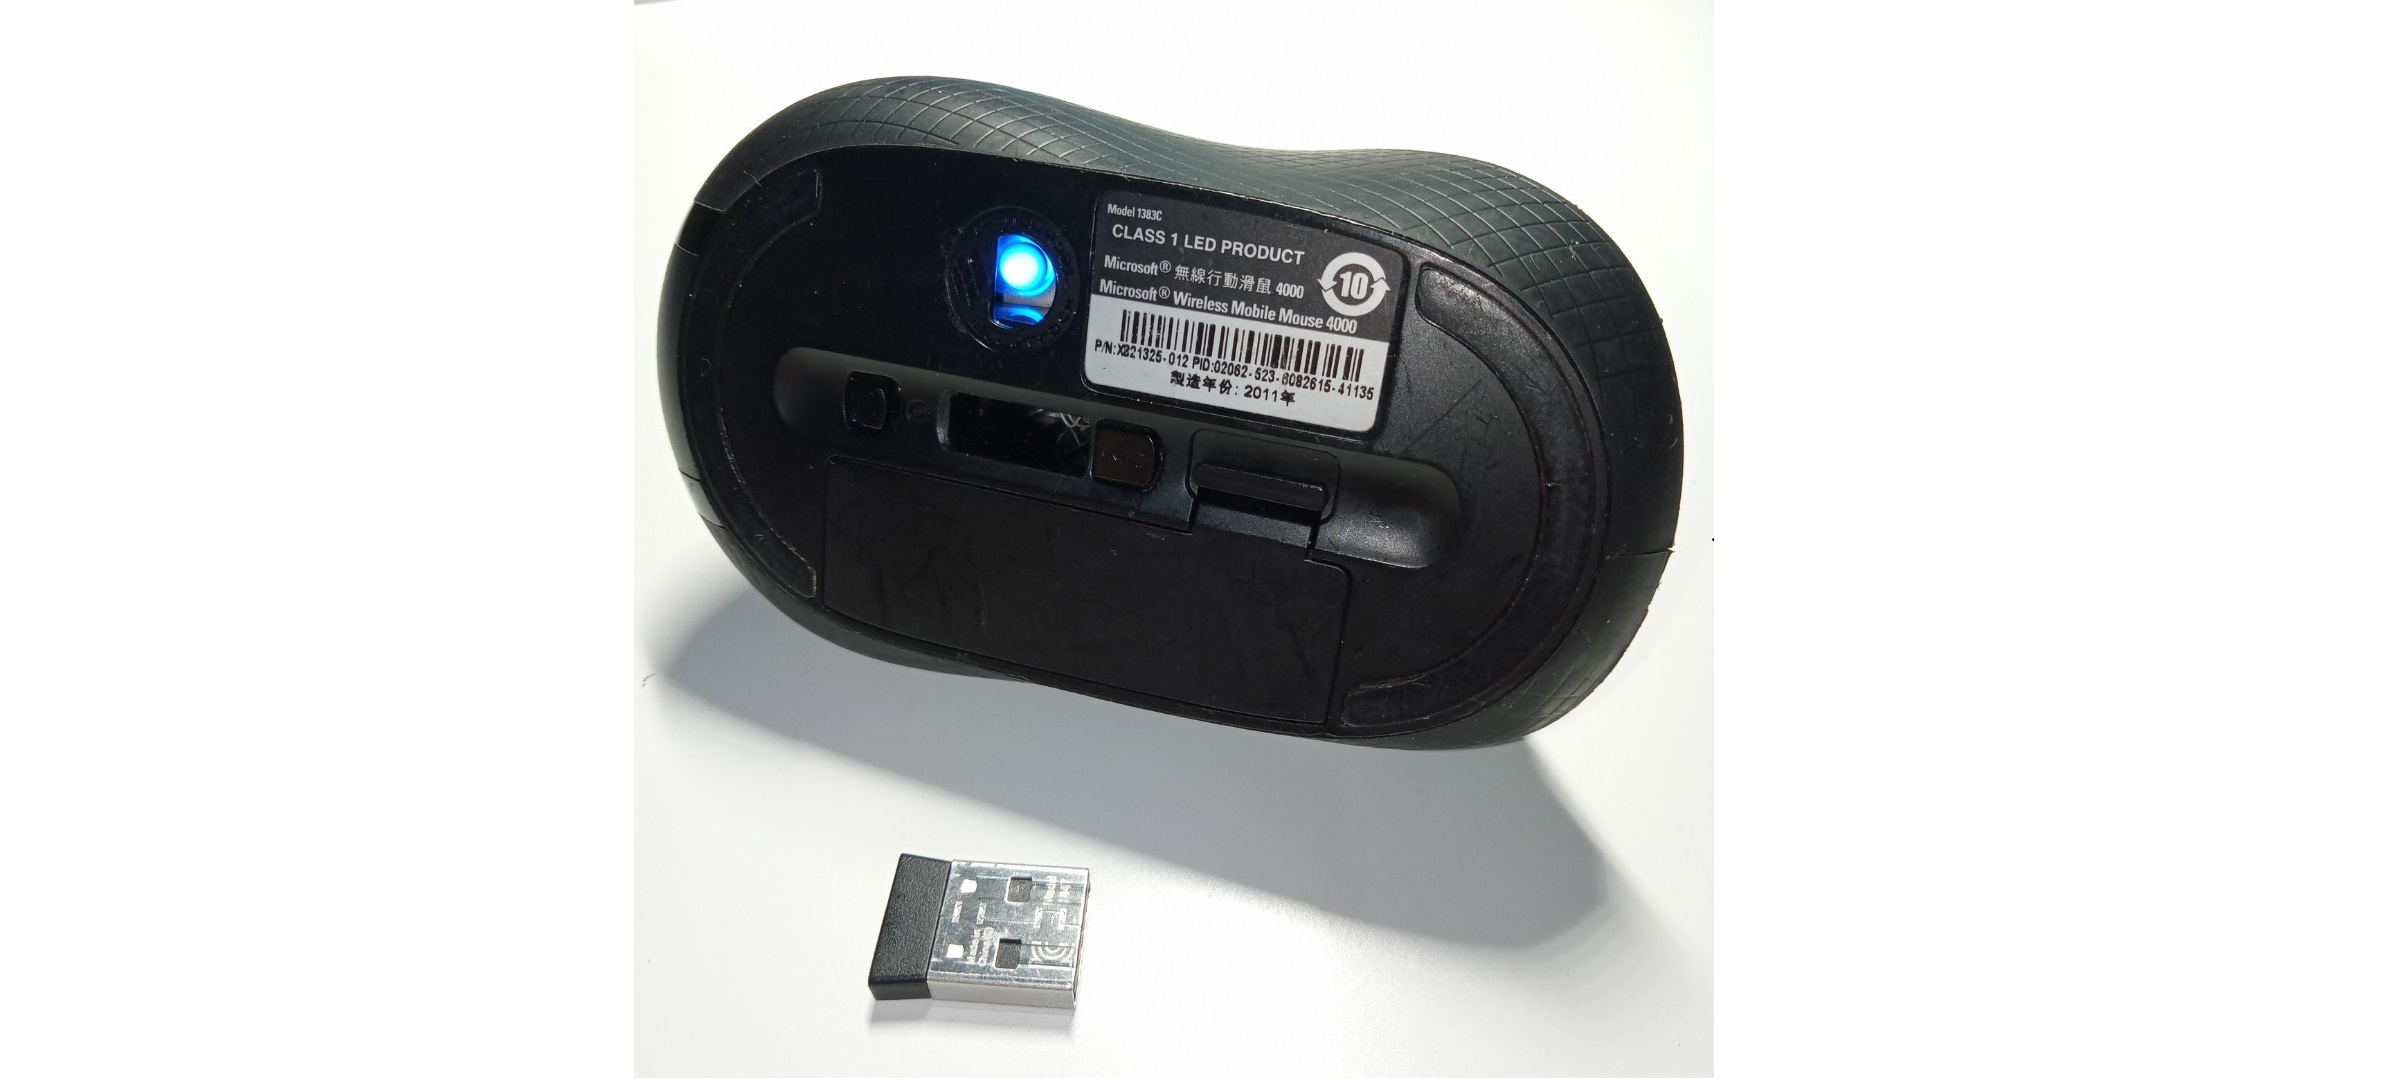 Chuột không dây Microsoft Wireless Mouse 4000 BlueTrack - D5D-00007 có công nghệ bluetracks cao cấp